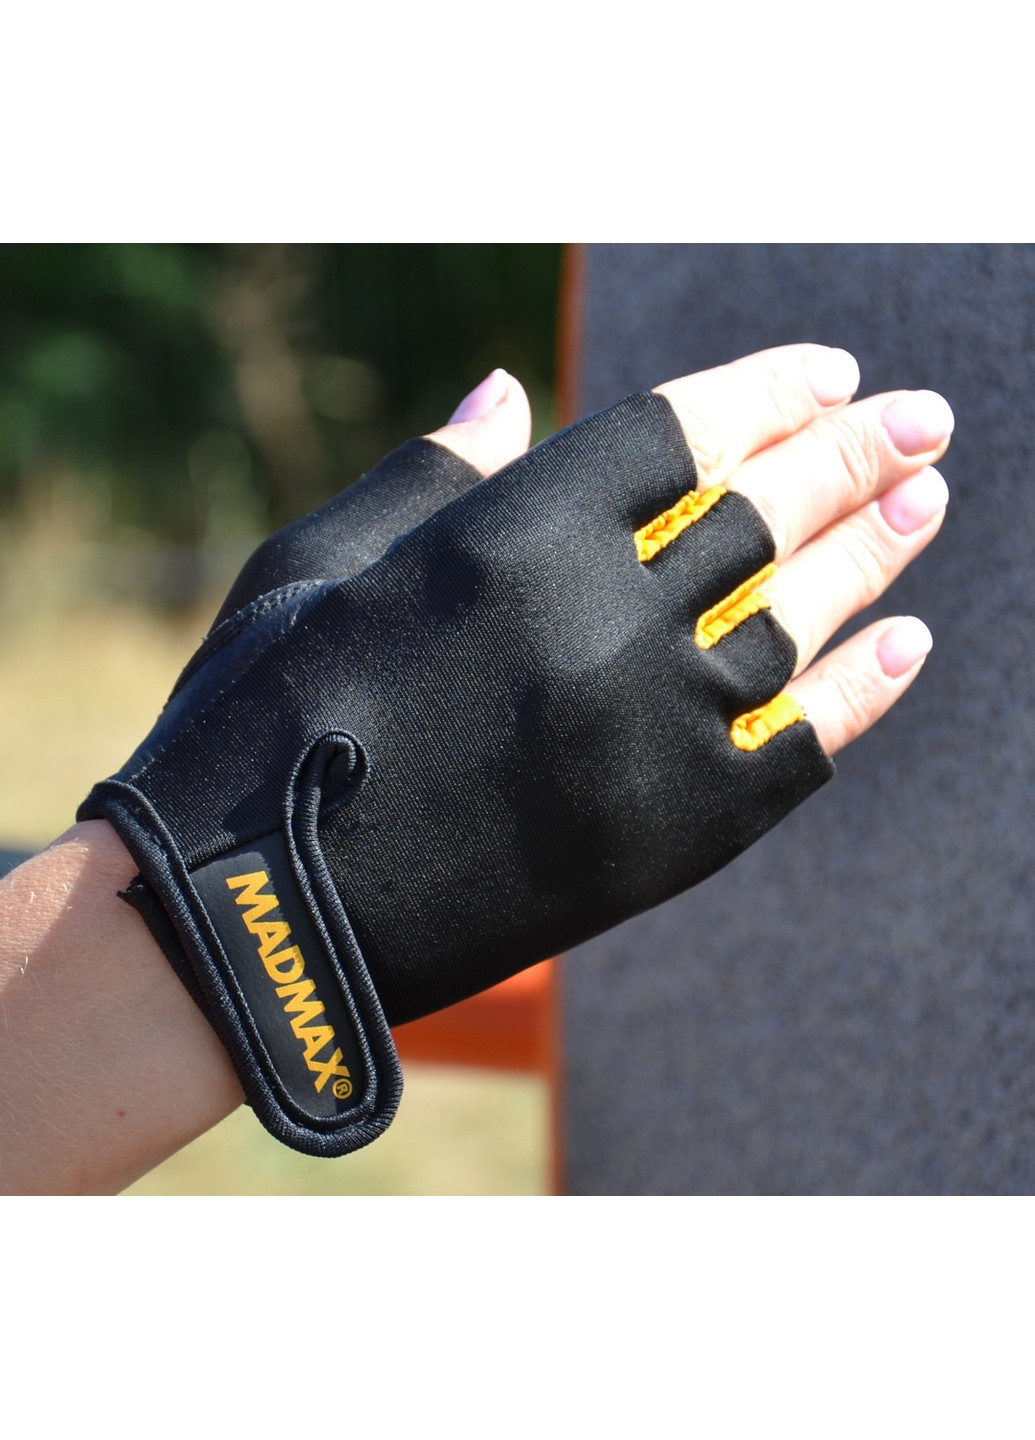 Унисекс перчатки для фитнеса L Mad Max (267657610)